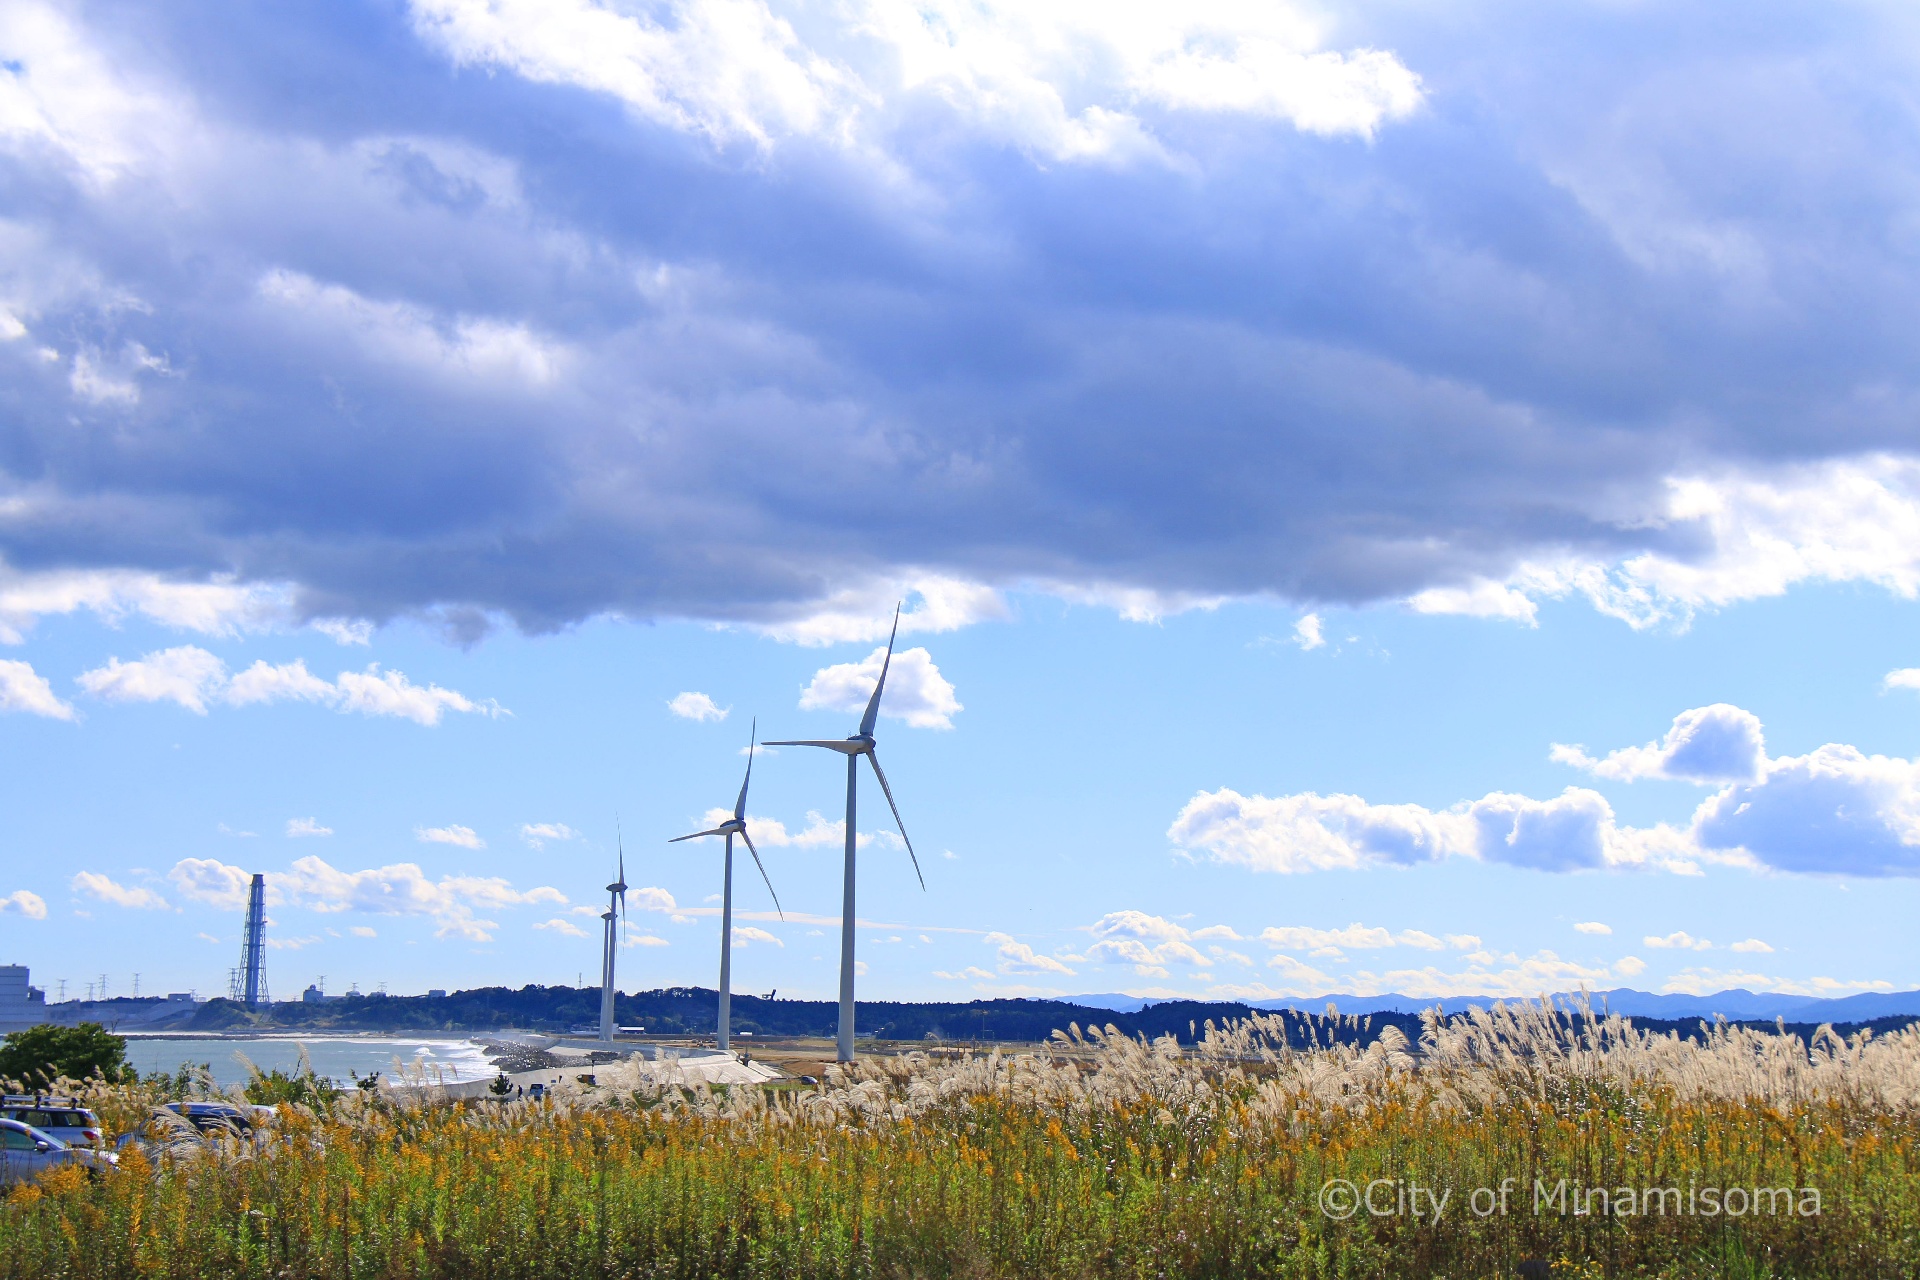 良く晴れた鹿島区北海老の海岸。小高い丘から見ると風力発電の風車が回っている。